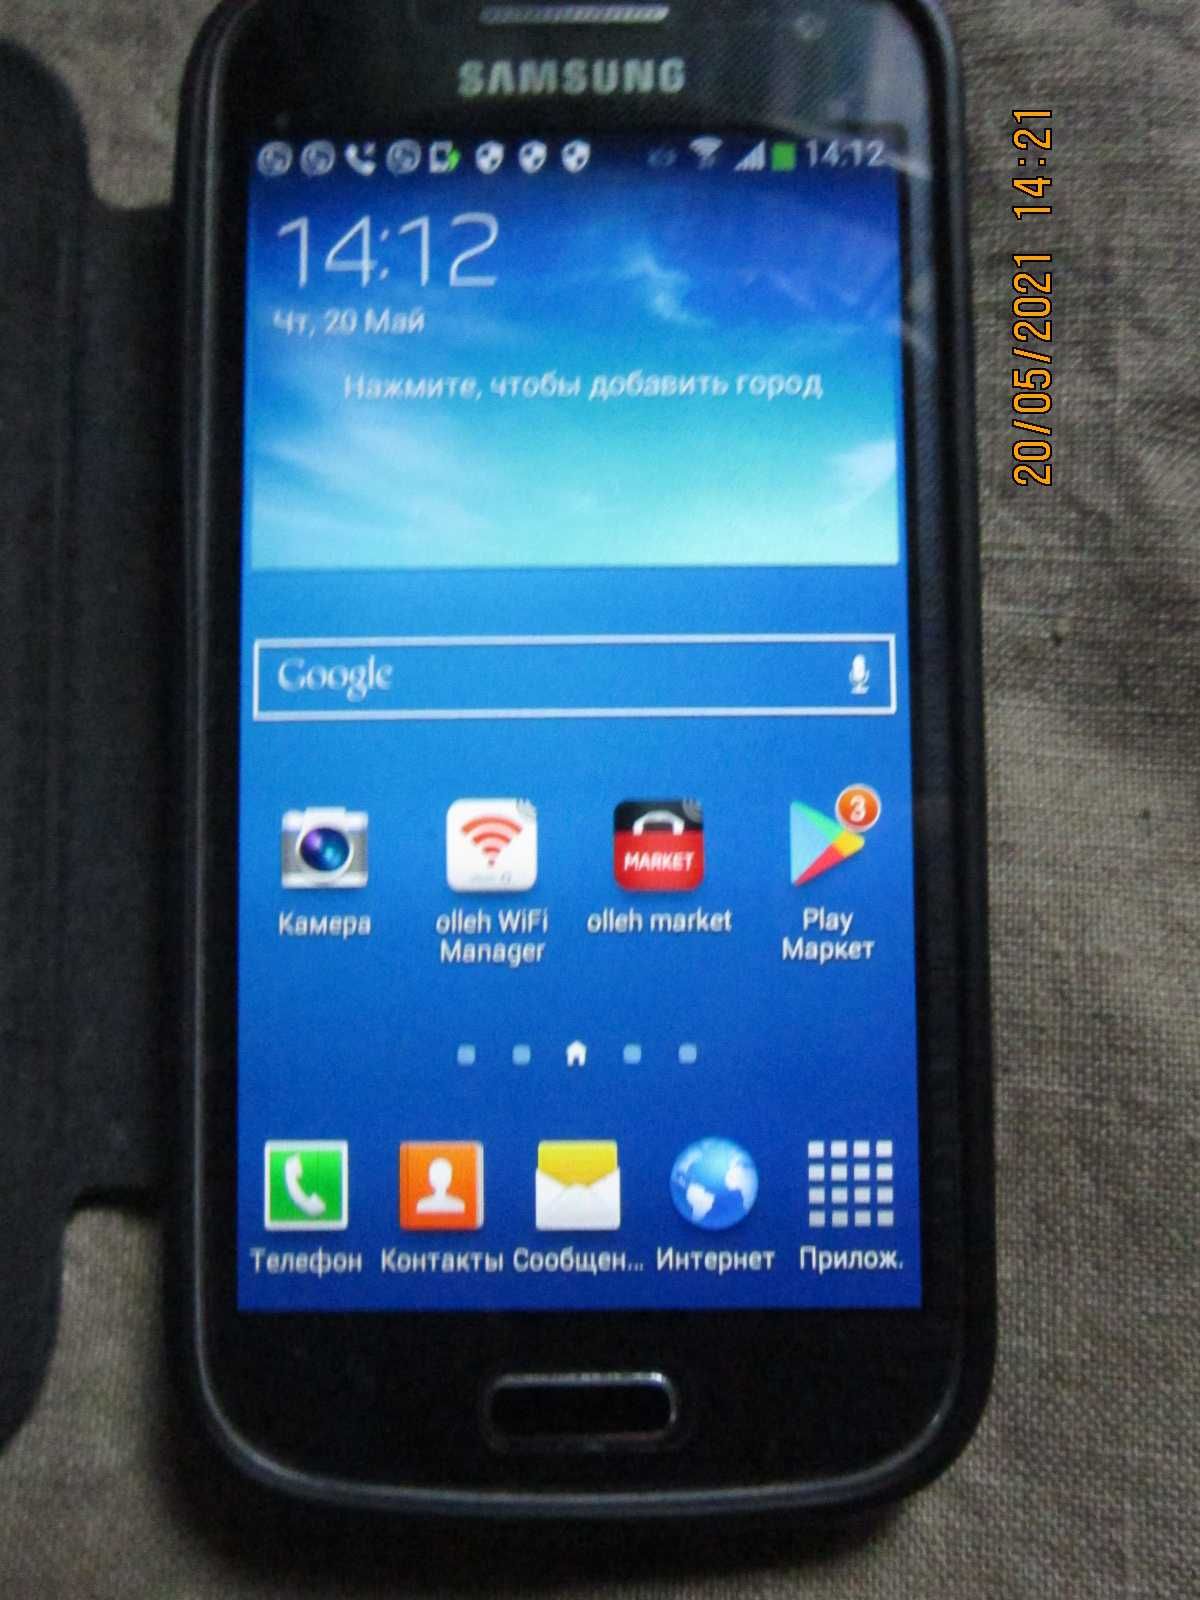 Продам недорого мобильный телефон: SAMSUNG  SHV-370K Цвет: чёрный.